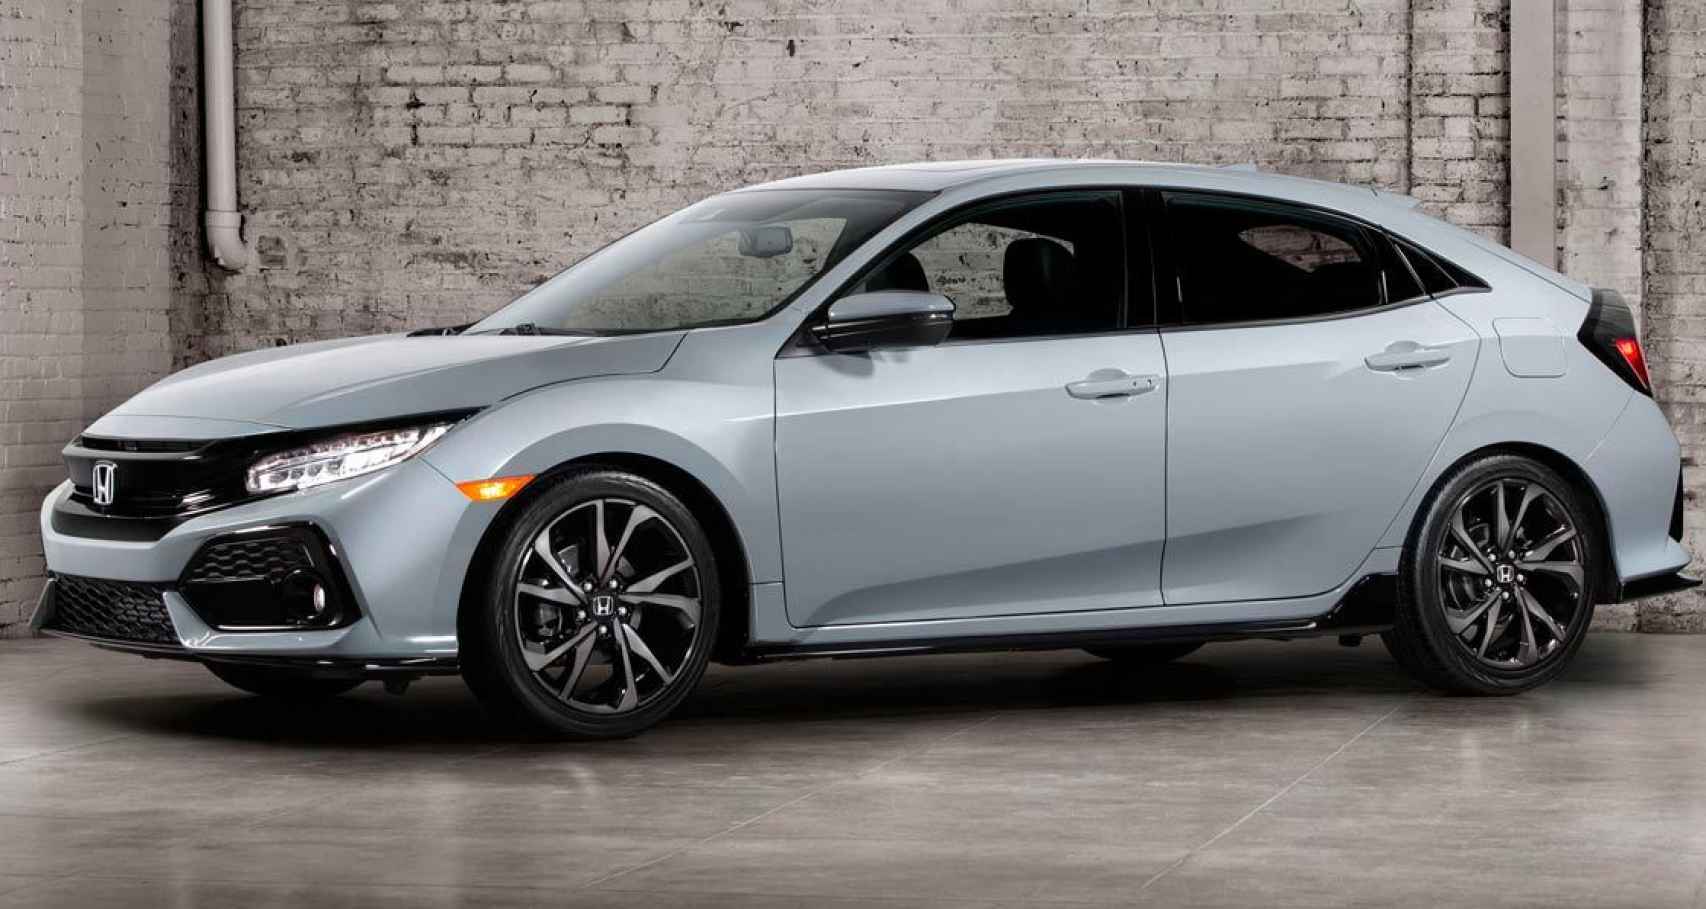 Honda Civic 2017, cambio total y tecnología nueva